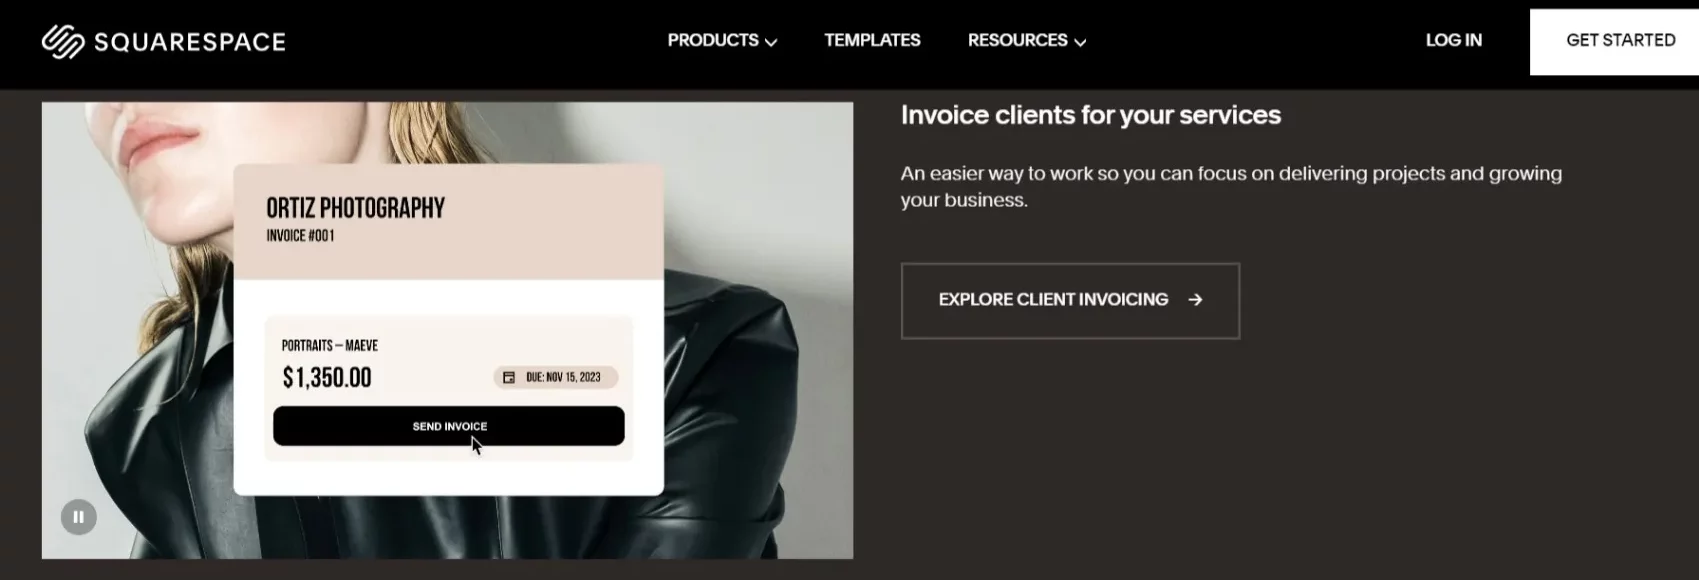 Client invoices